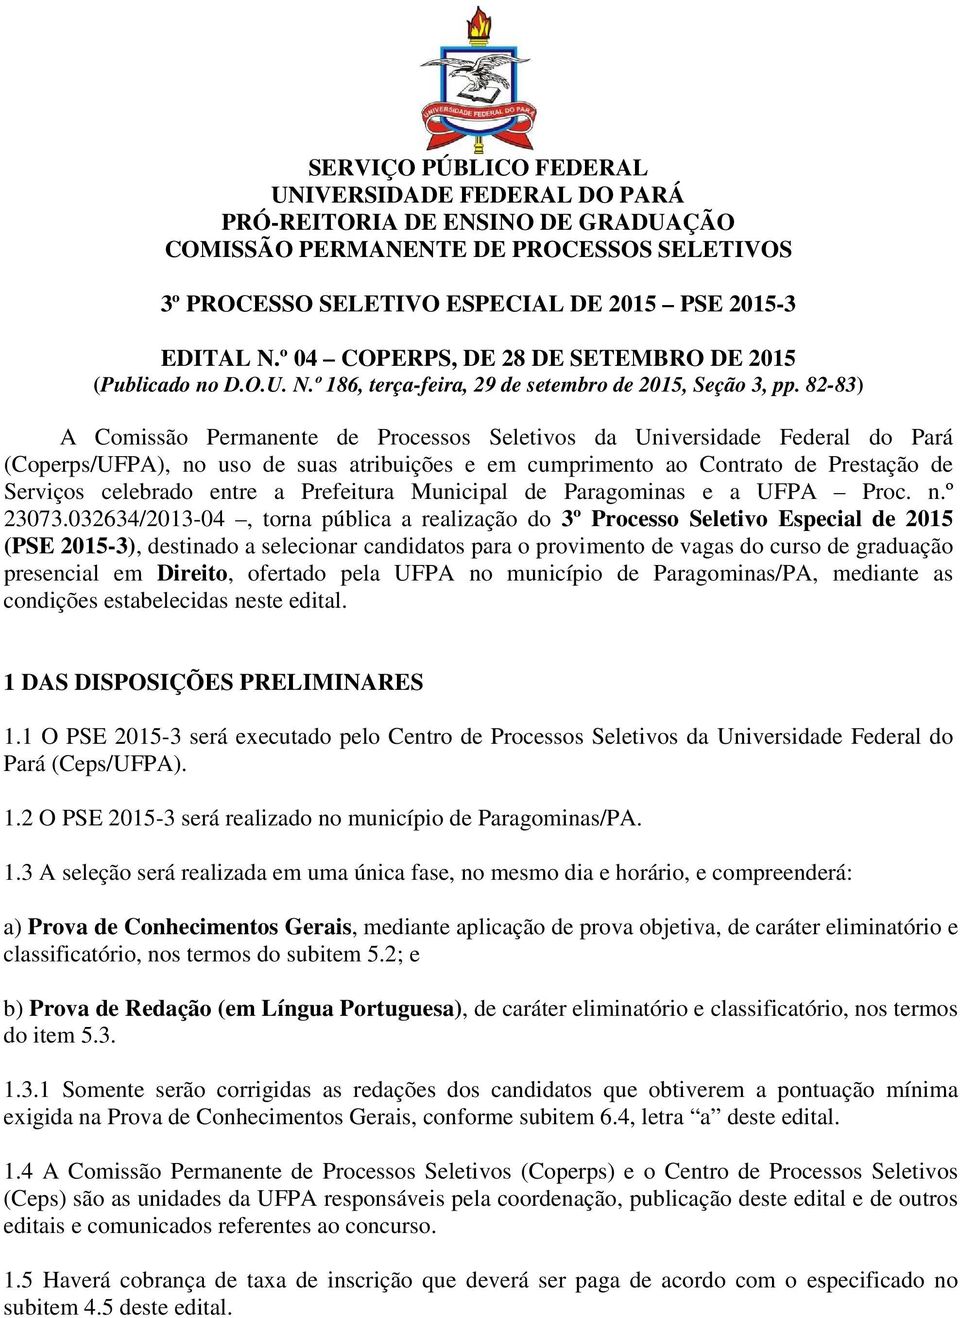 82-83) A Comissão Permanente de Processos Seletivos da Universidade Federal do Pará (Coperps/UFPA), no uso de suas atribuições e em cumprimento ao Contrato de Prestação de Serviços celebrado entre a